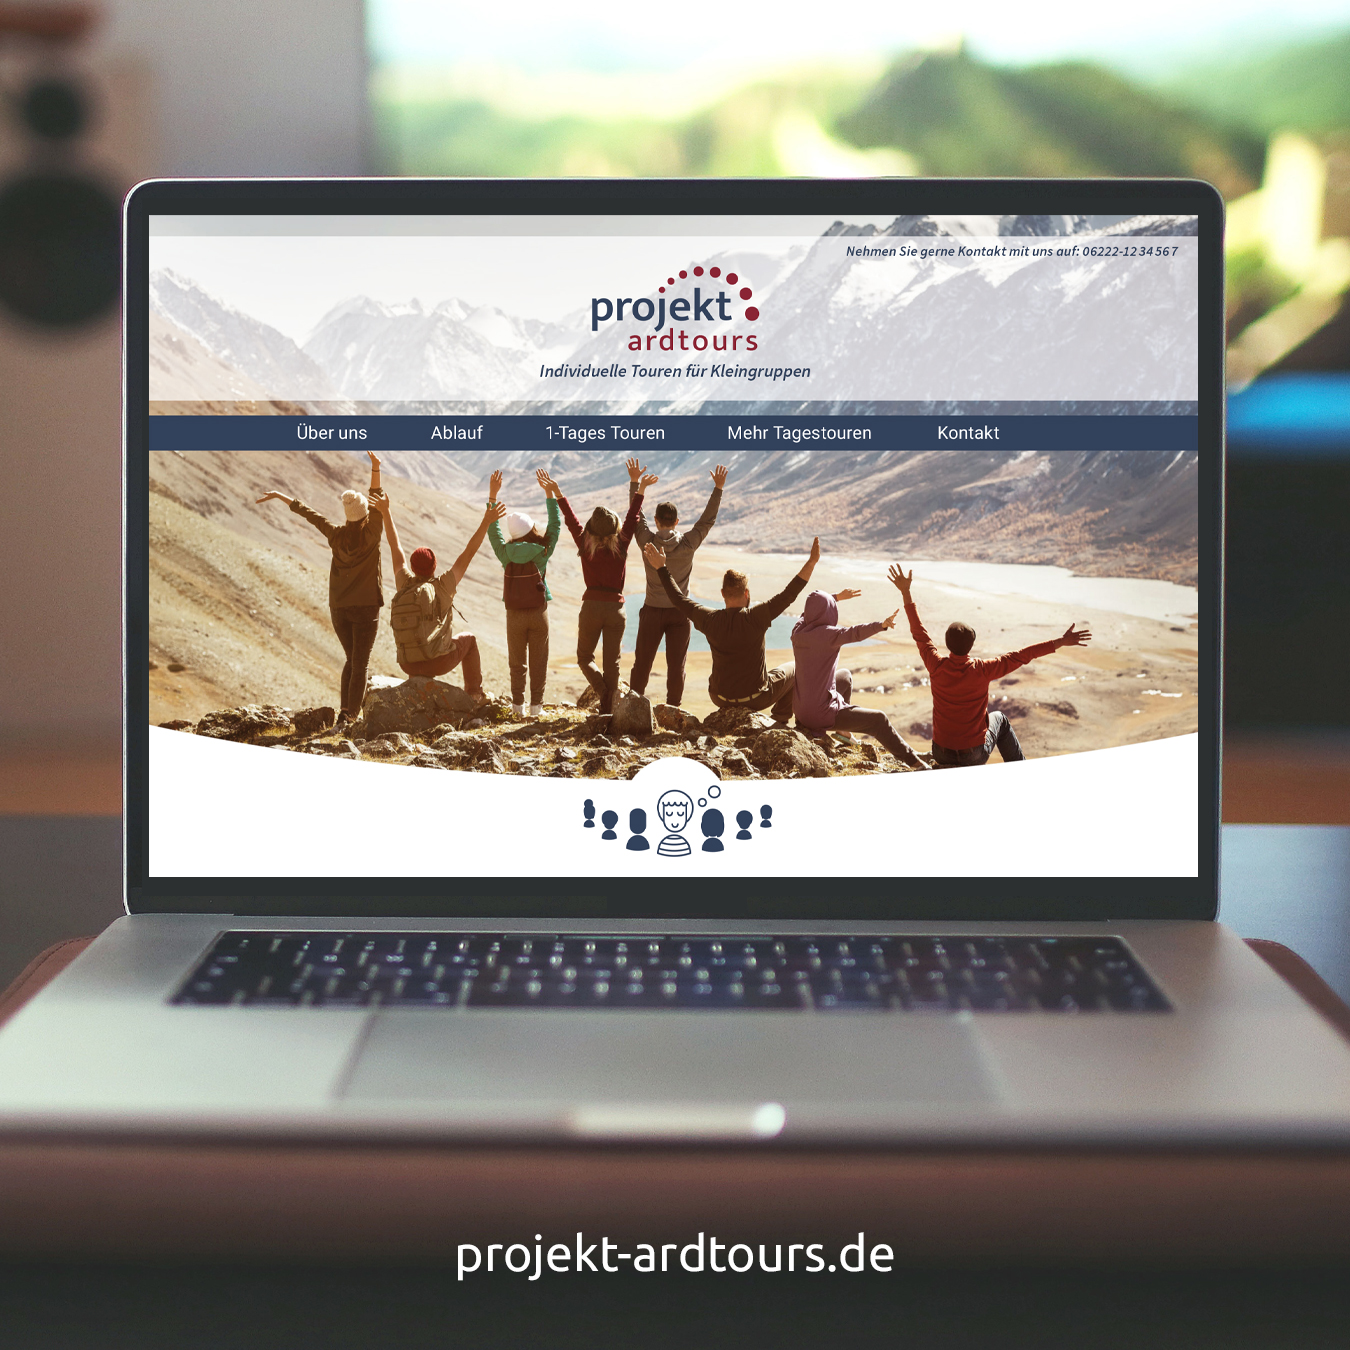 Webseite projektardtours
Reiseorganisator für Kleingruppen 